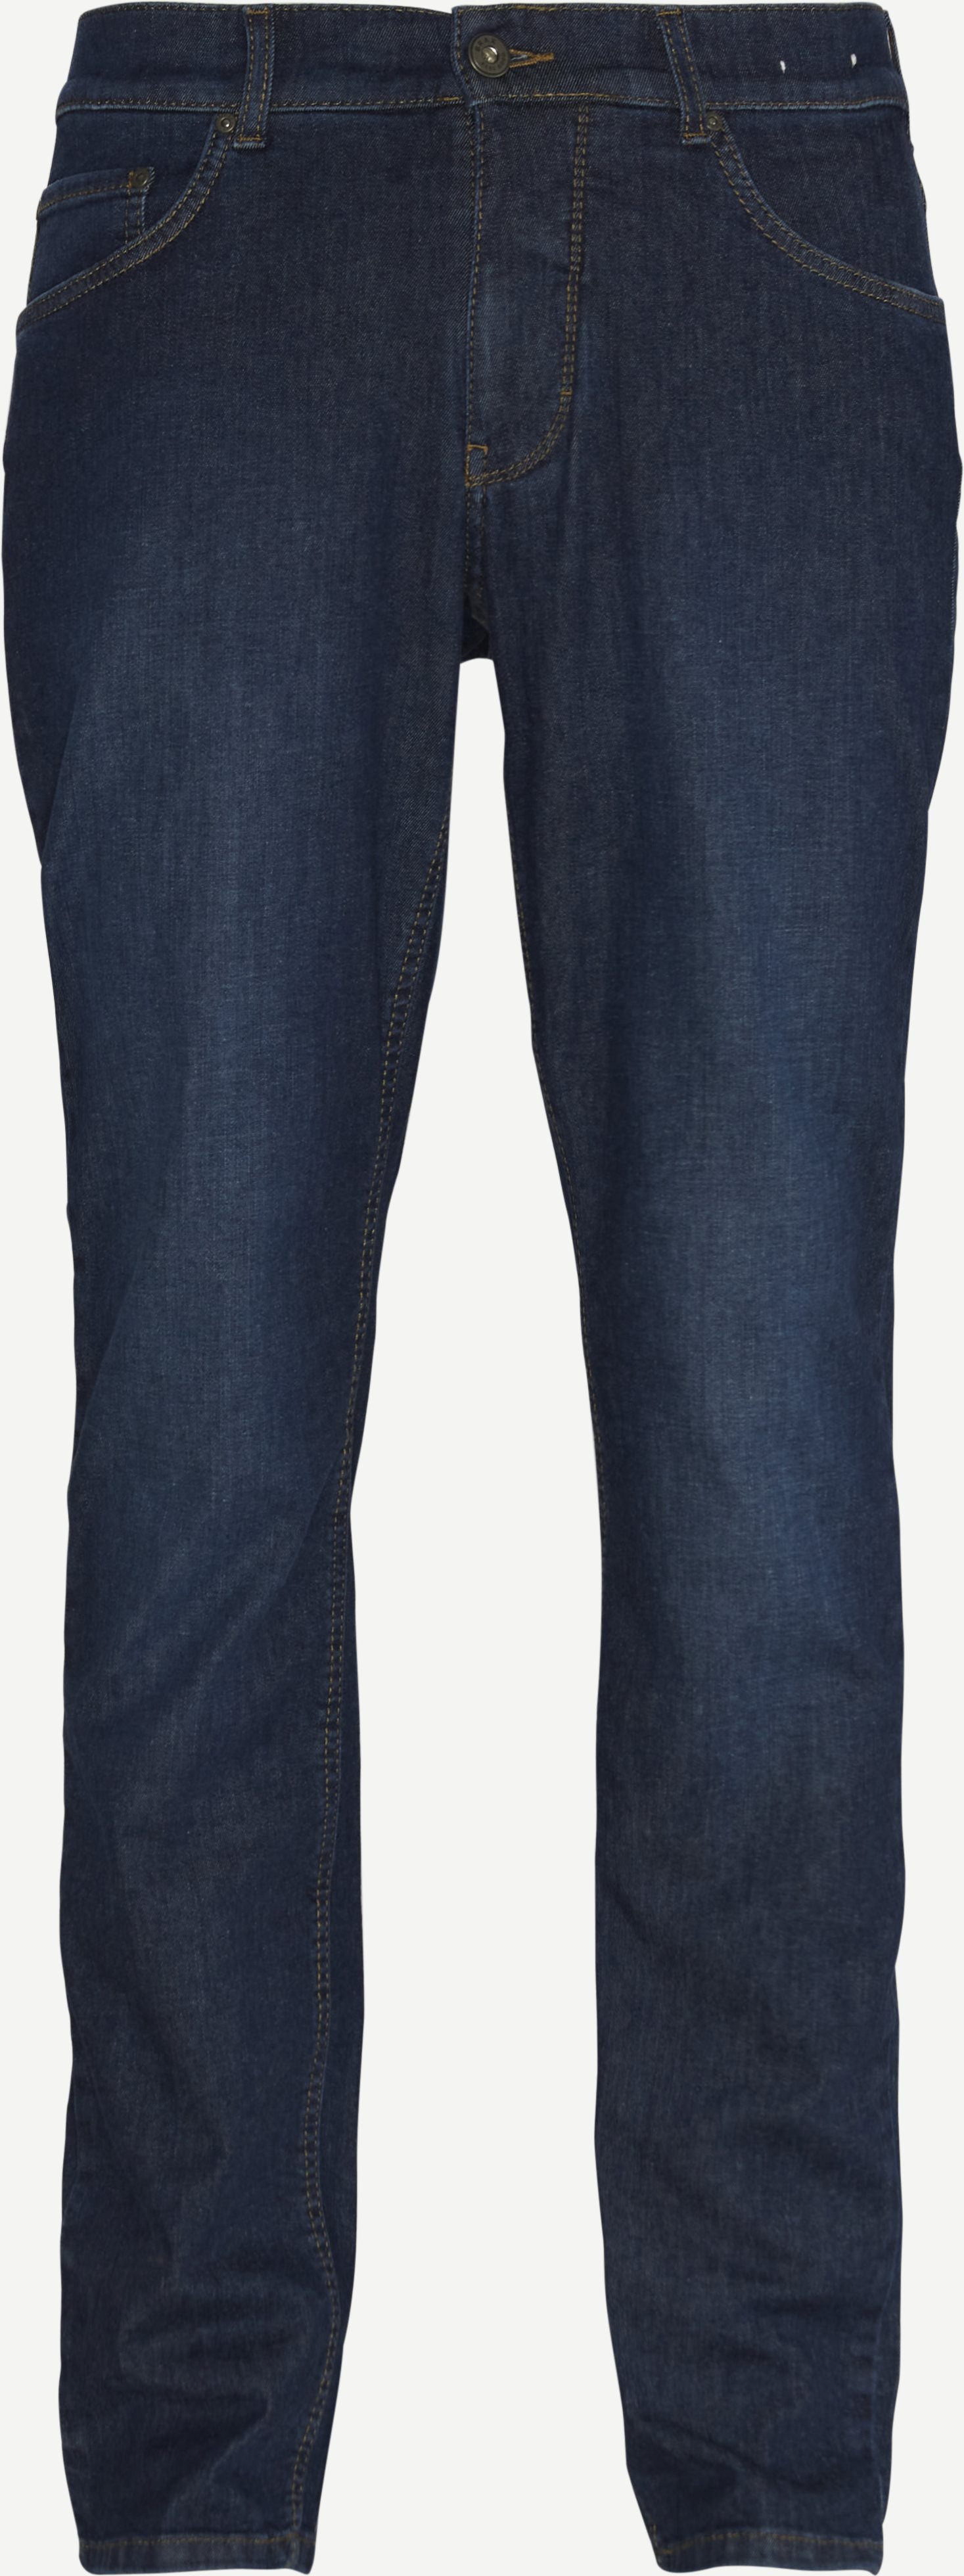 Cooper Jeans - Jeans - Regular fit - Denim